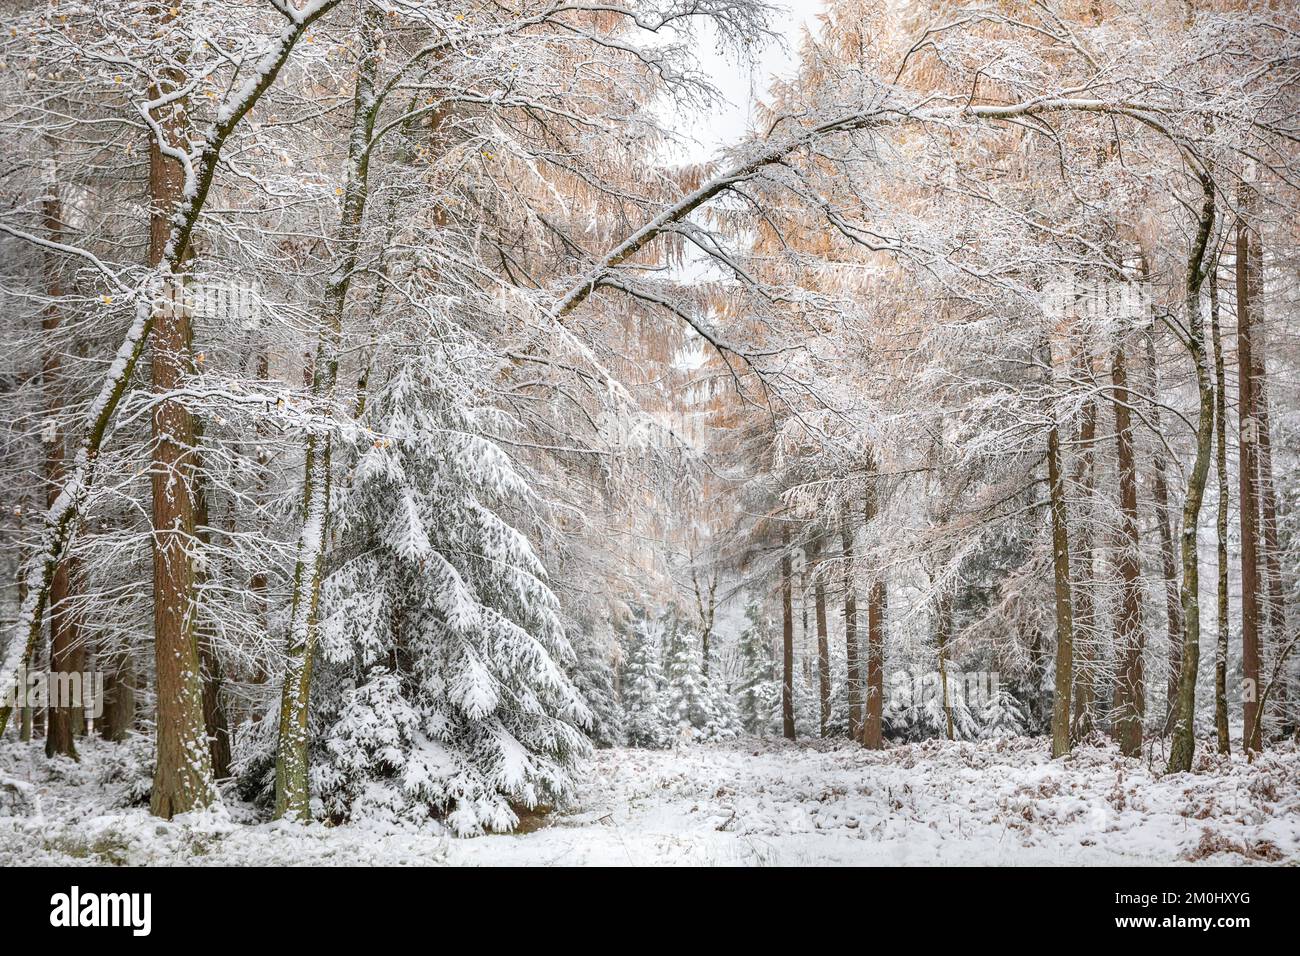 mélèze, forêt d'épicéa dans la neige pendant l'hiver Banque D'Images